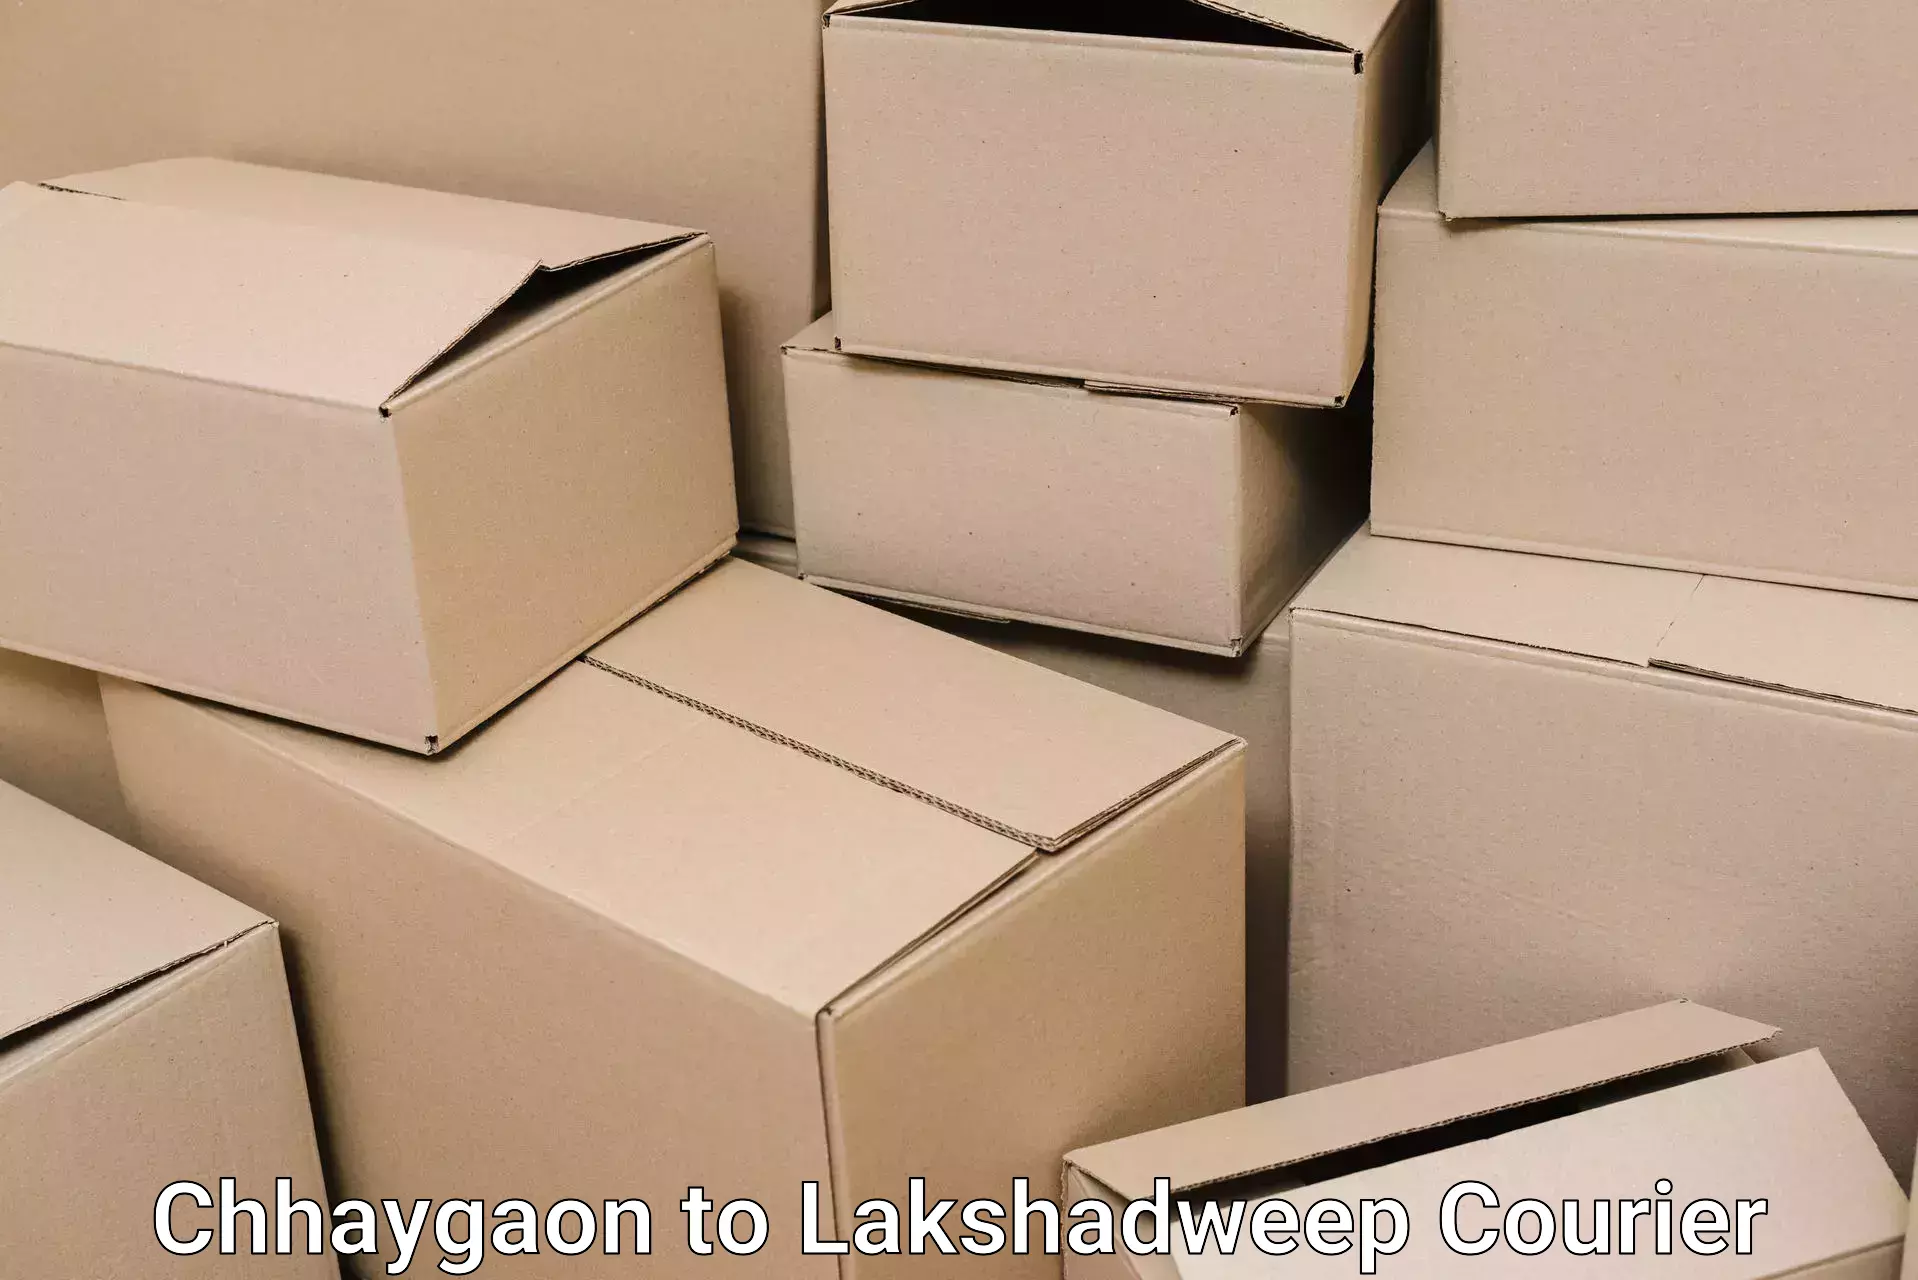 Stress-free household shifting Chhaygaon to Lakshadweep